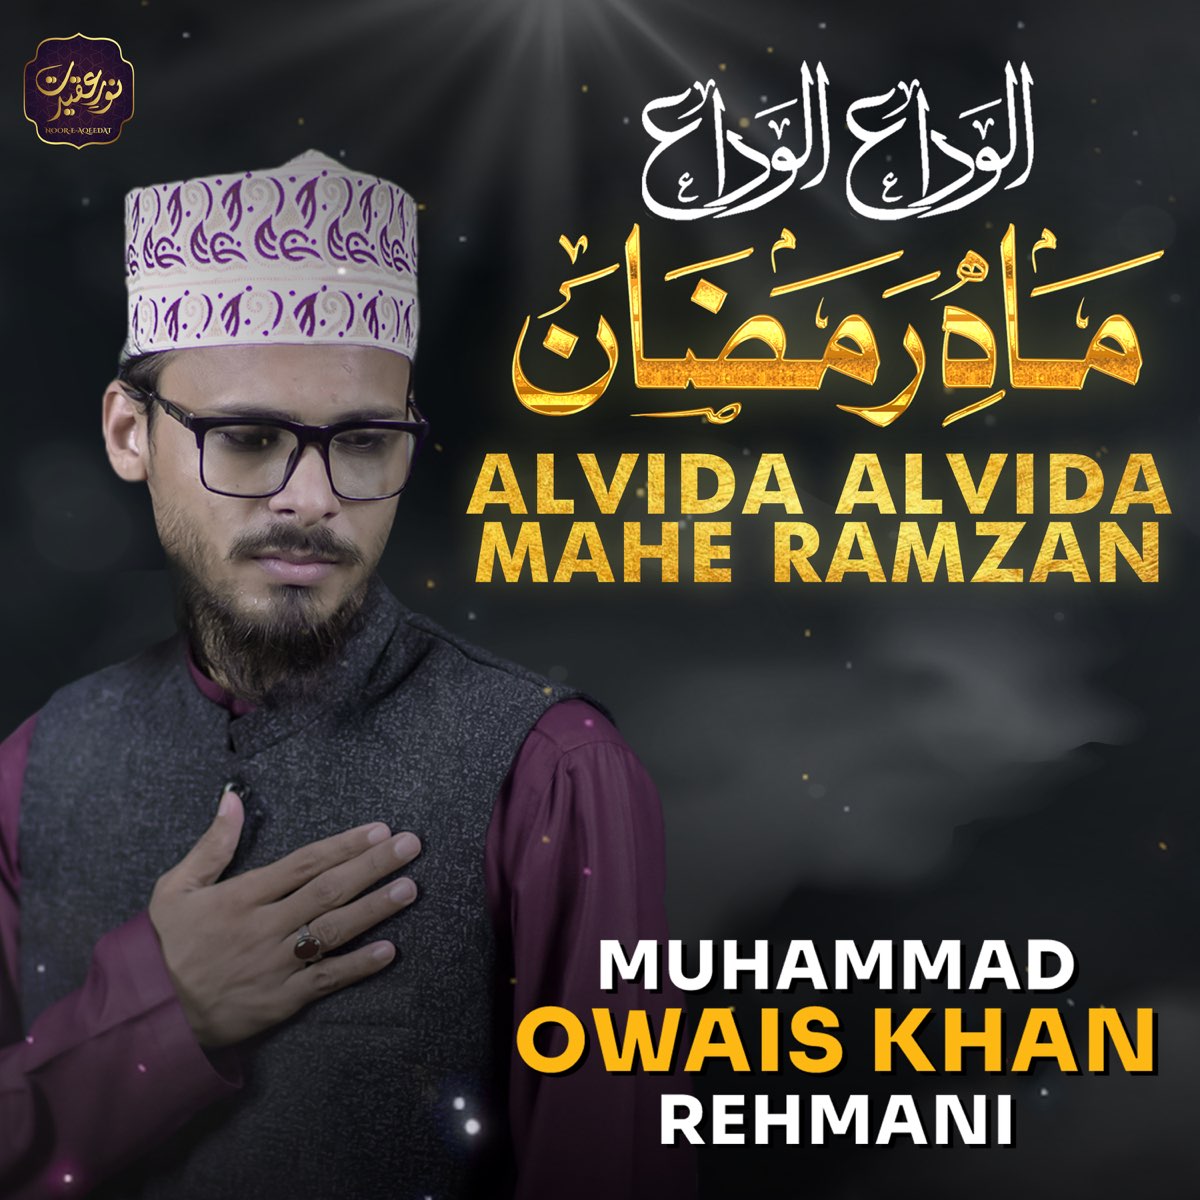 Alvida Alvida Mahe Ramzan - Single by Muhammad Owais Khan Rehmani ...